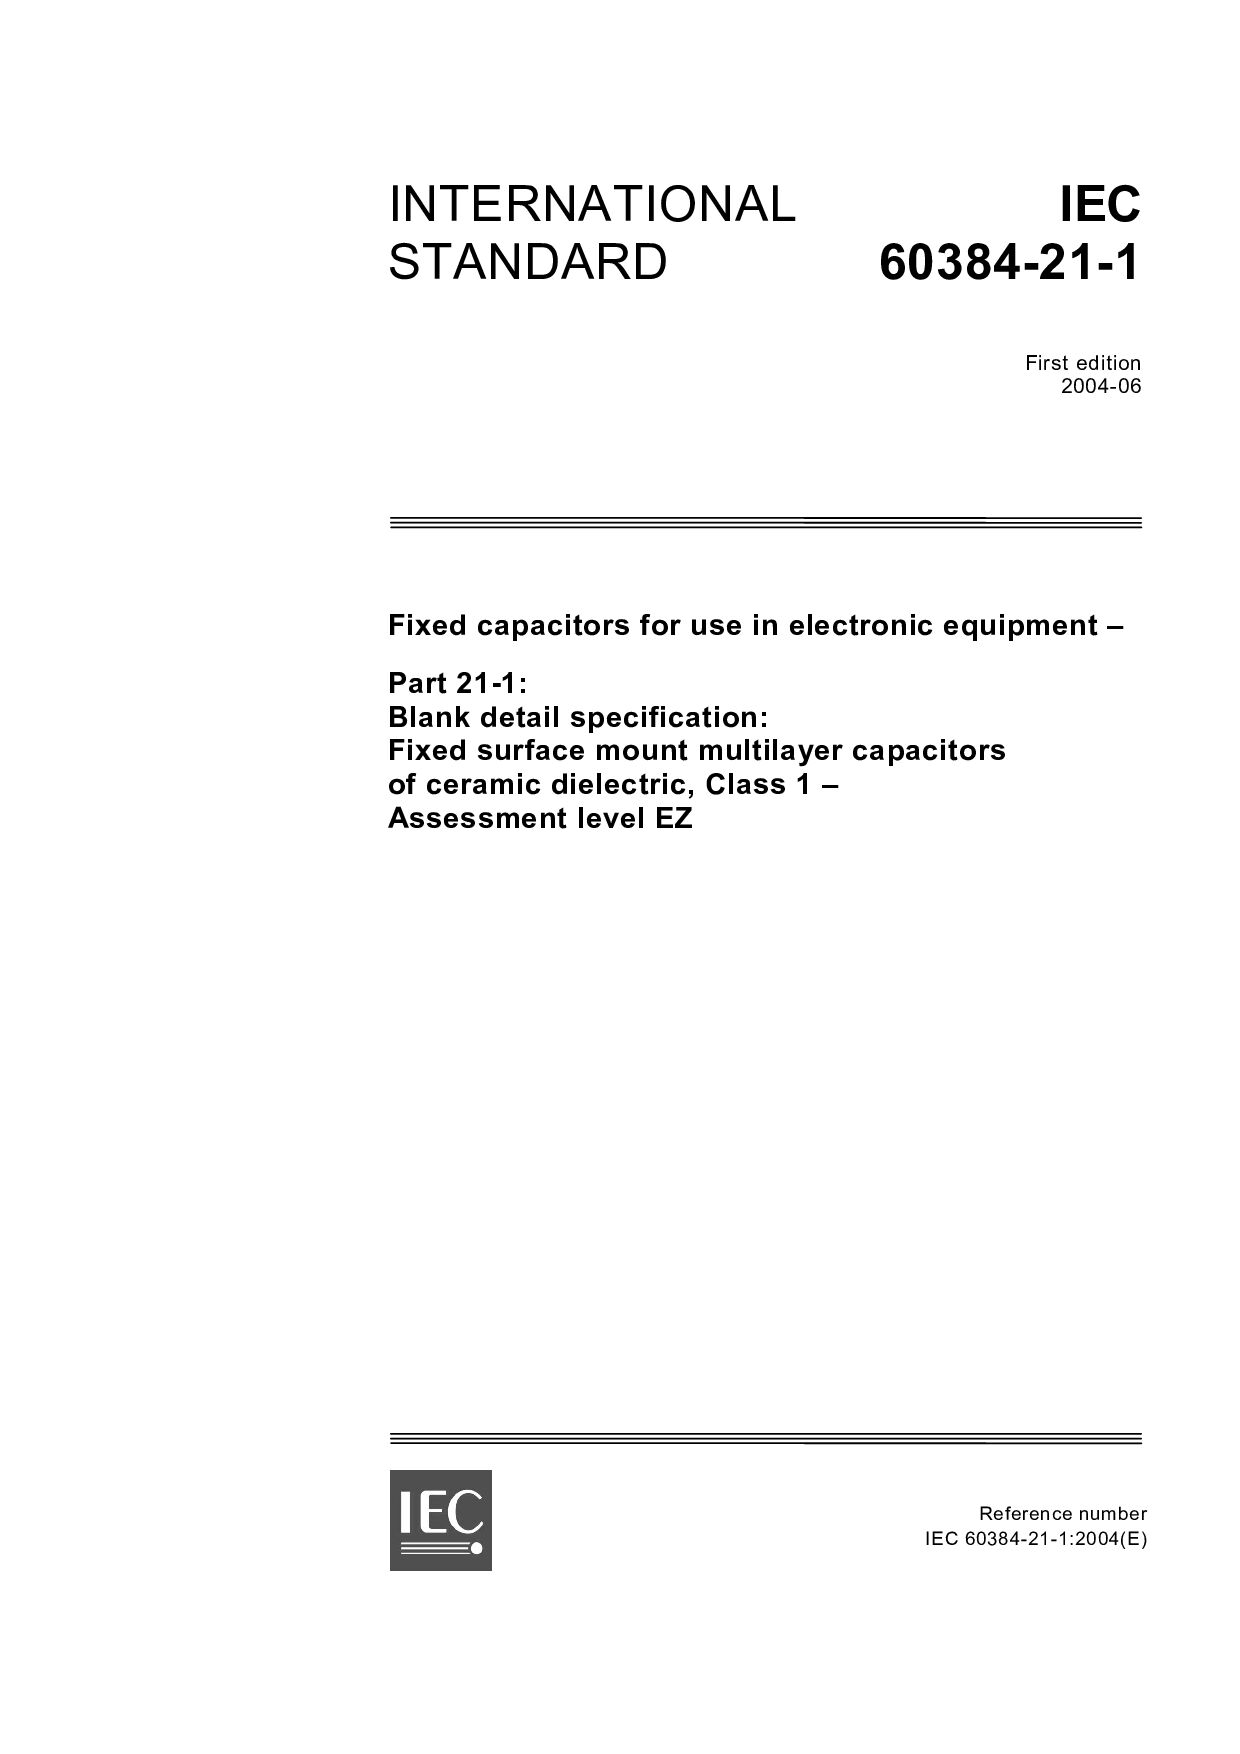 IEC 60384-21-1:2004封面图